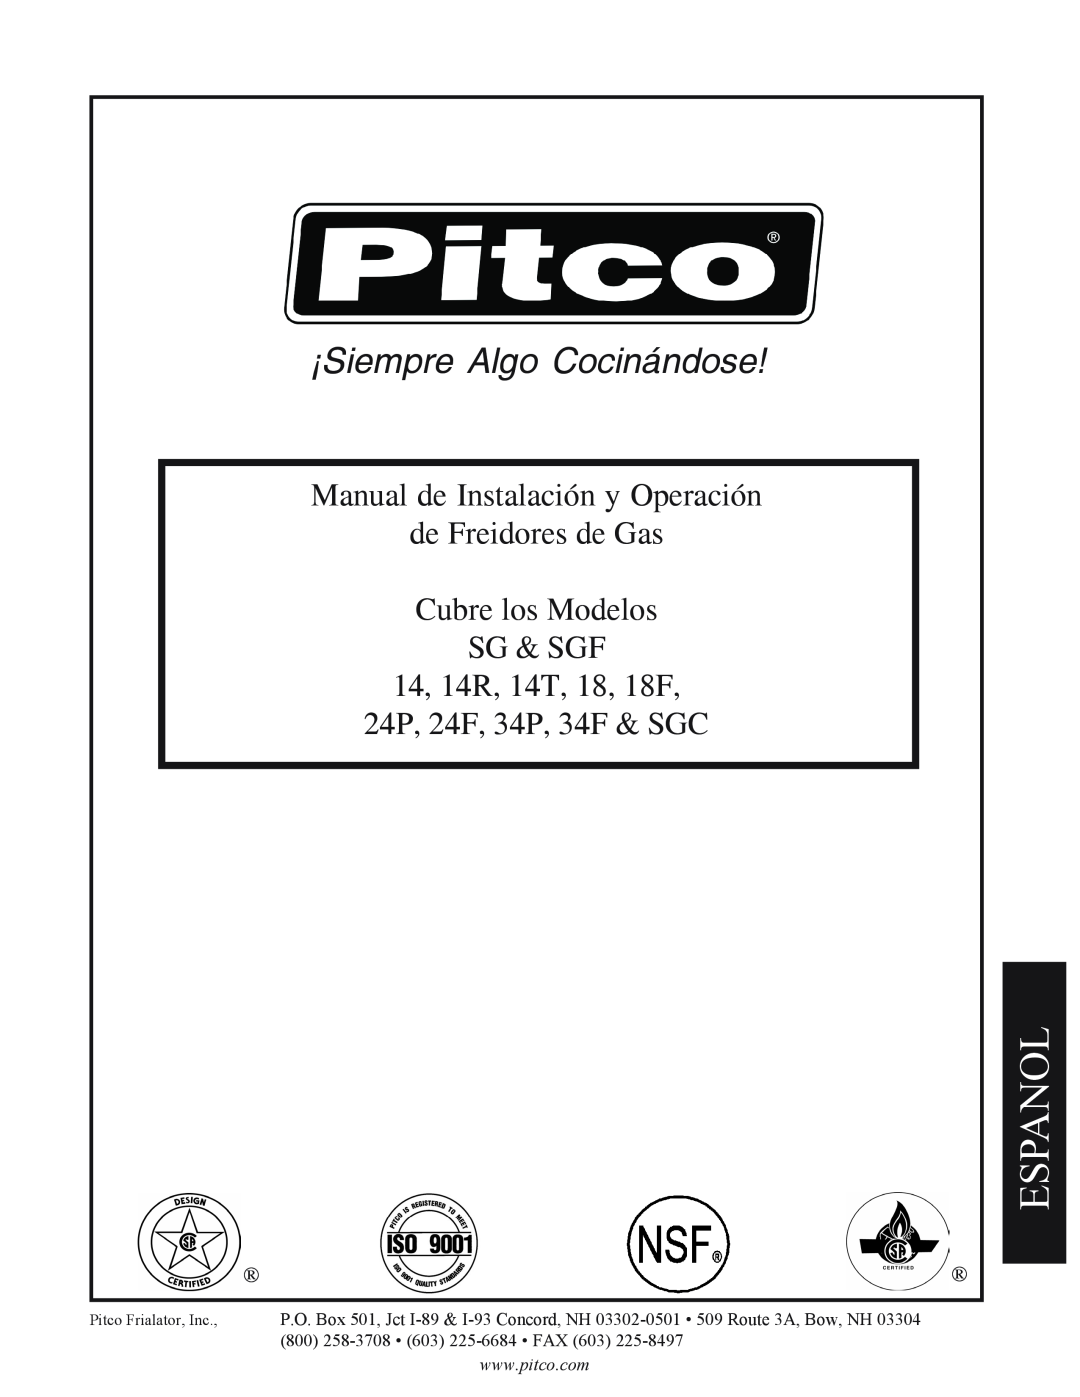 Pitco Frialator 14T, SGC, 34P Espanol, Manual de Instalación y Operación, de Freidores de Gas Cubre los Modelos SG & SGF 